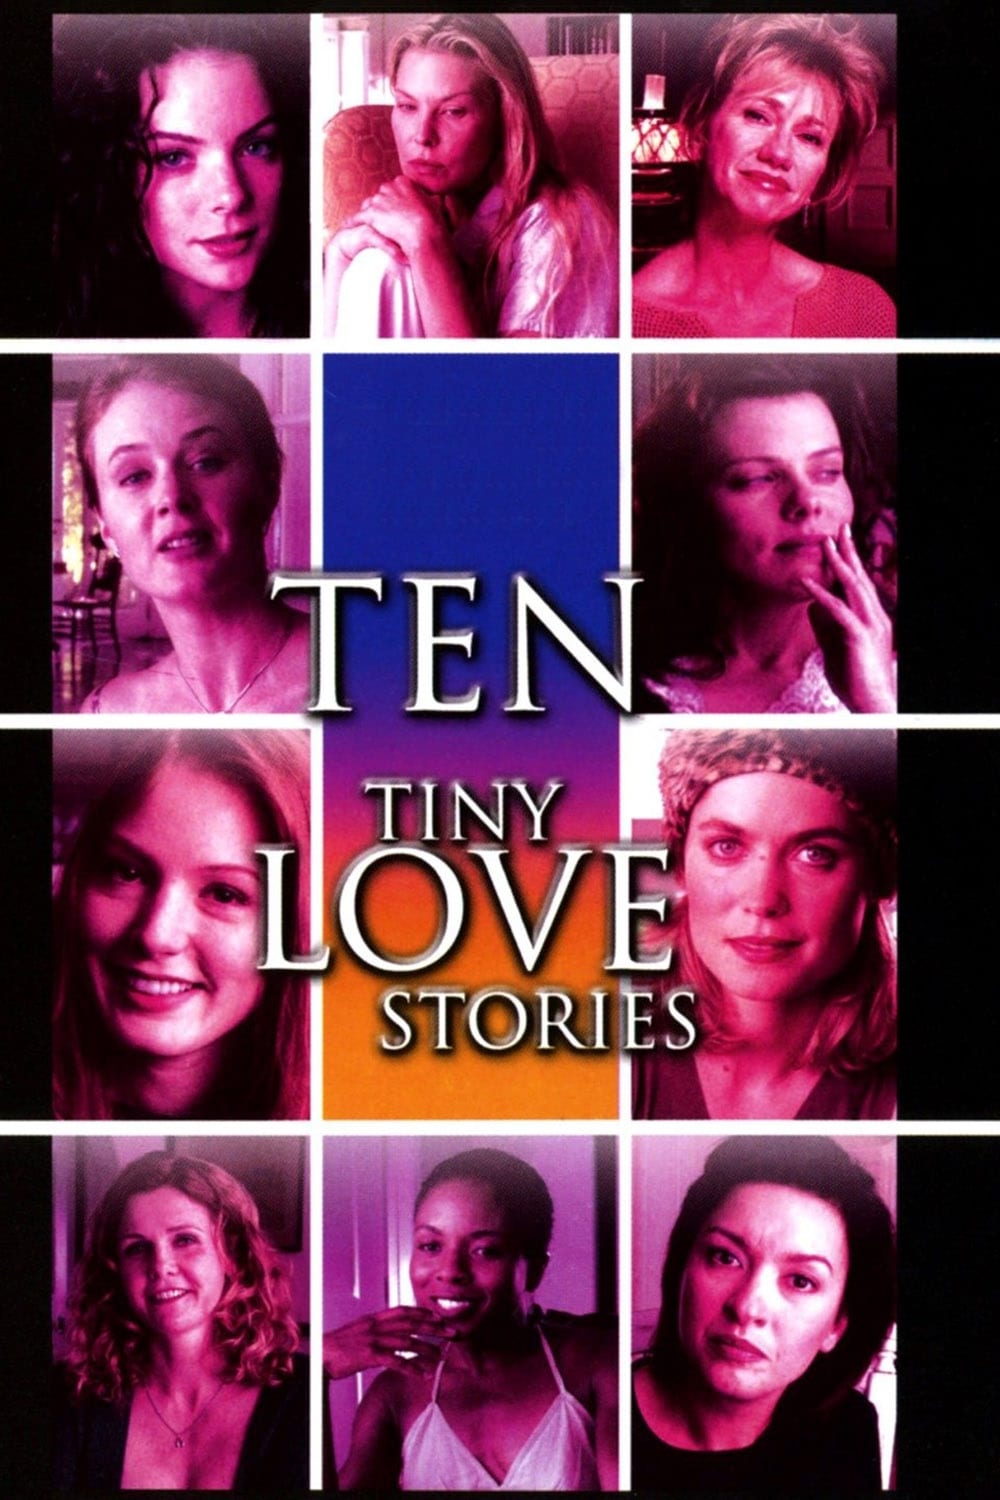 Ten Tiny Love Stories (2002)